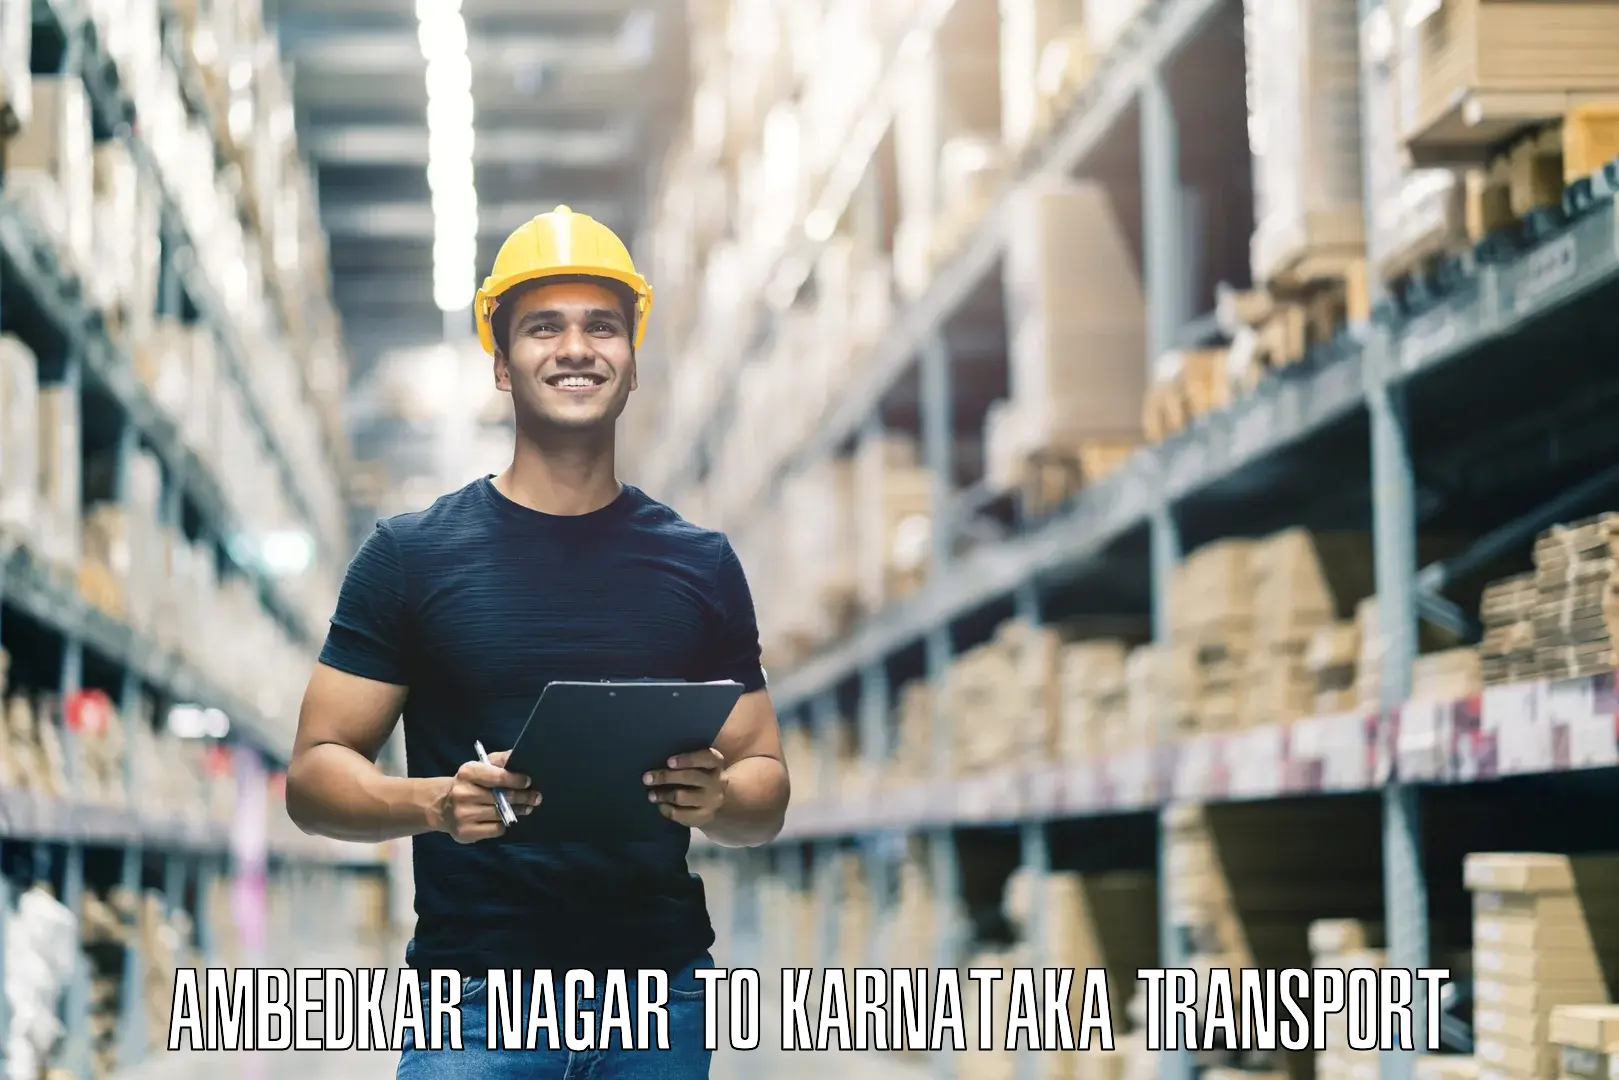 Shipping services in Ambedkar Nagar to Karnataka